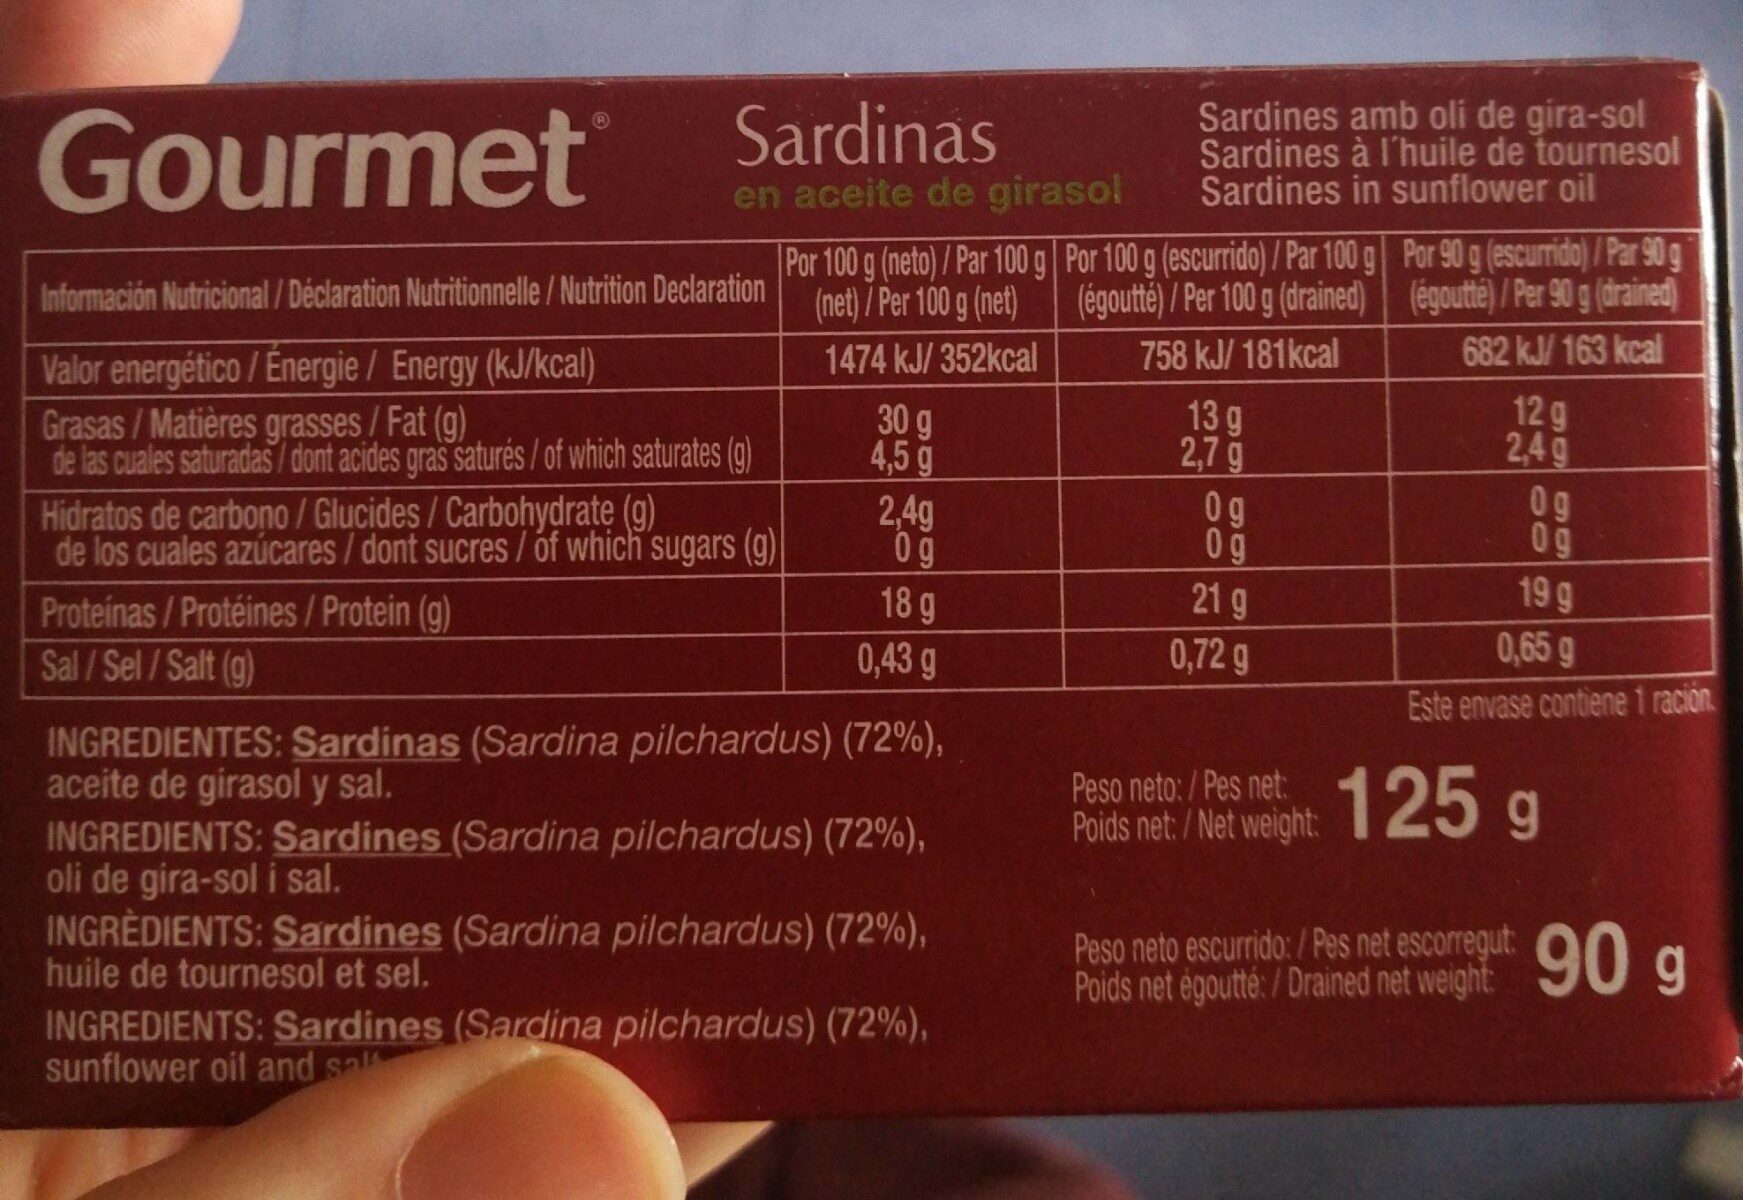 Sardinas en aceite de girasol - Nutrition facts - es